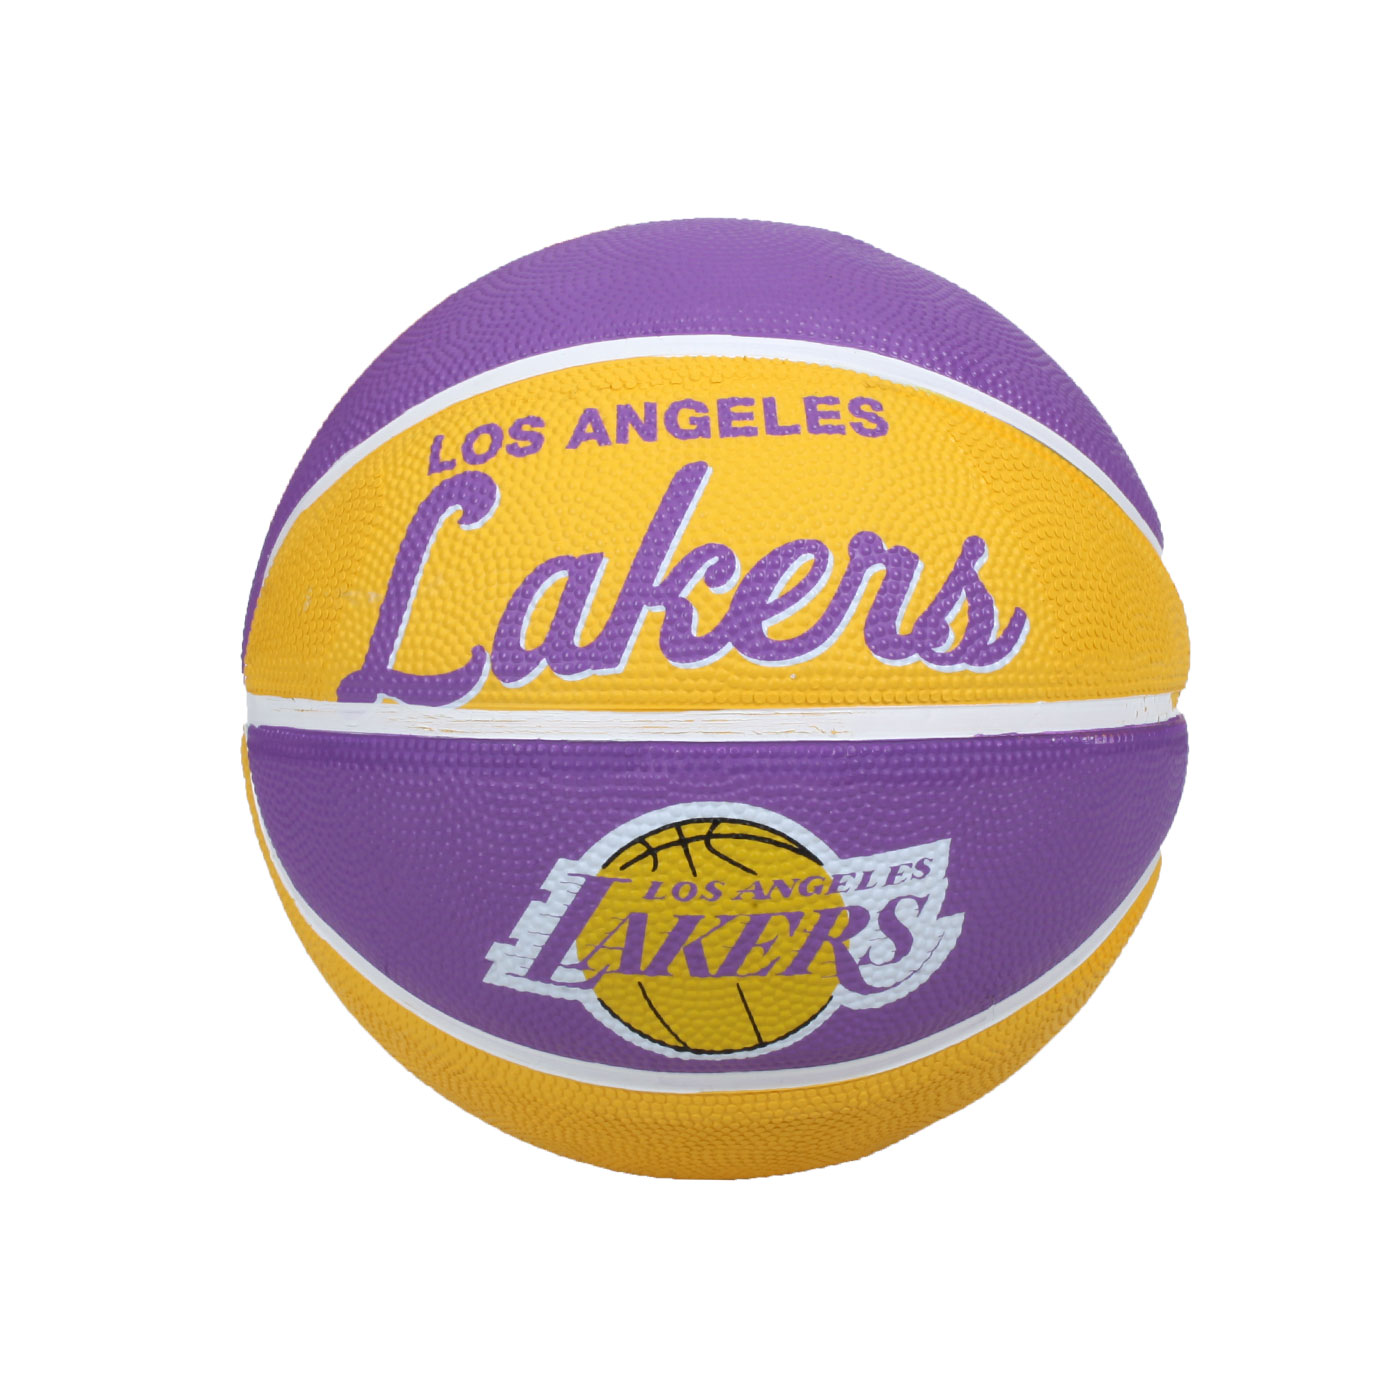 WILSON NBA隊徽系列橡膠籃球-復古湖人隊#3 WTB3200XBLAL